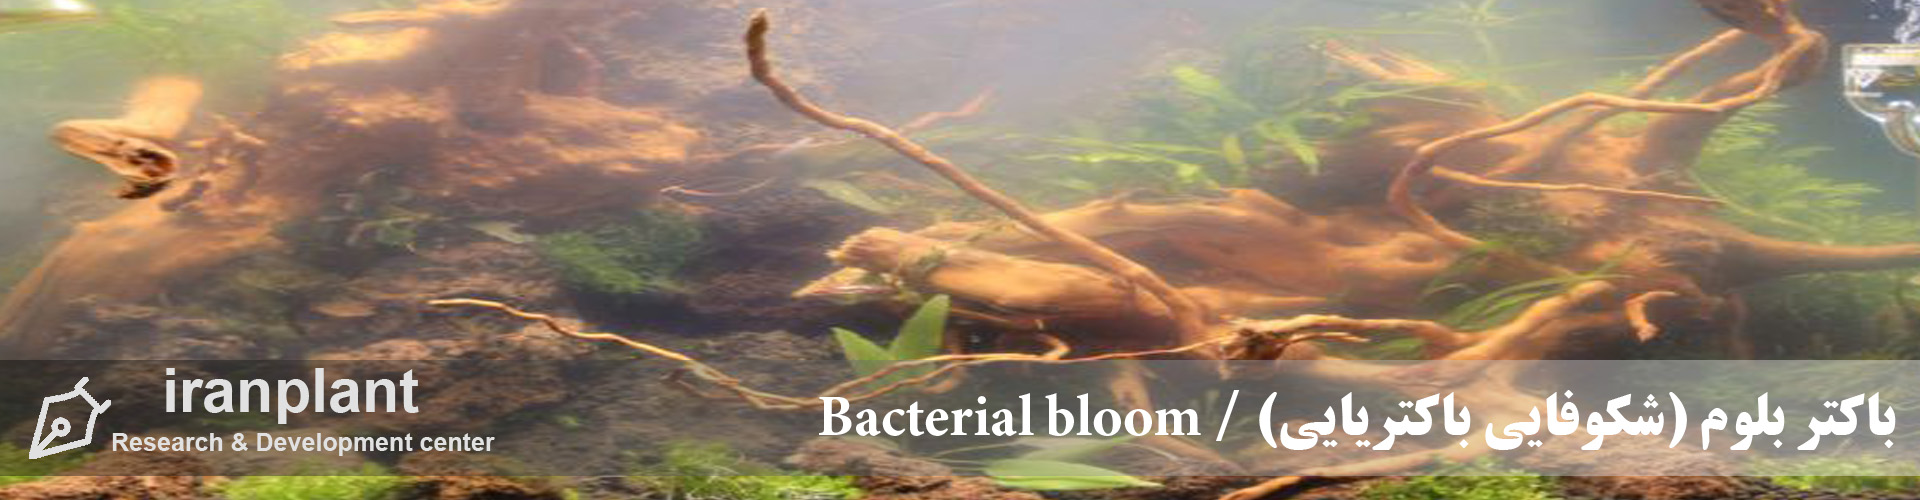 باکتر بلوم (شکوفایی باکتریایی) / Bacterial bloom